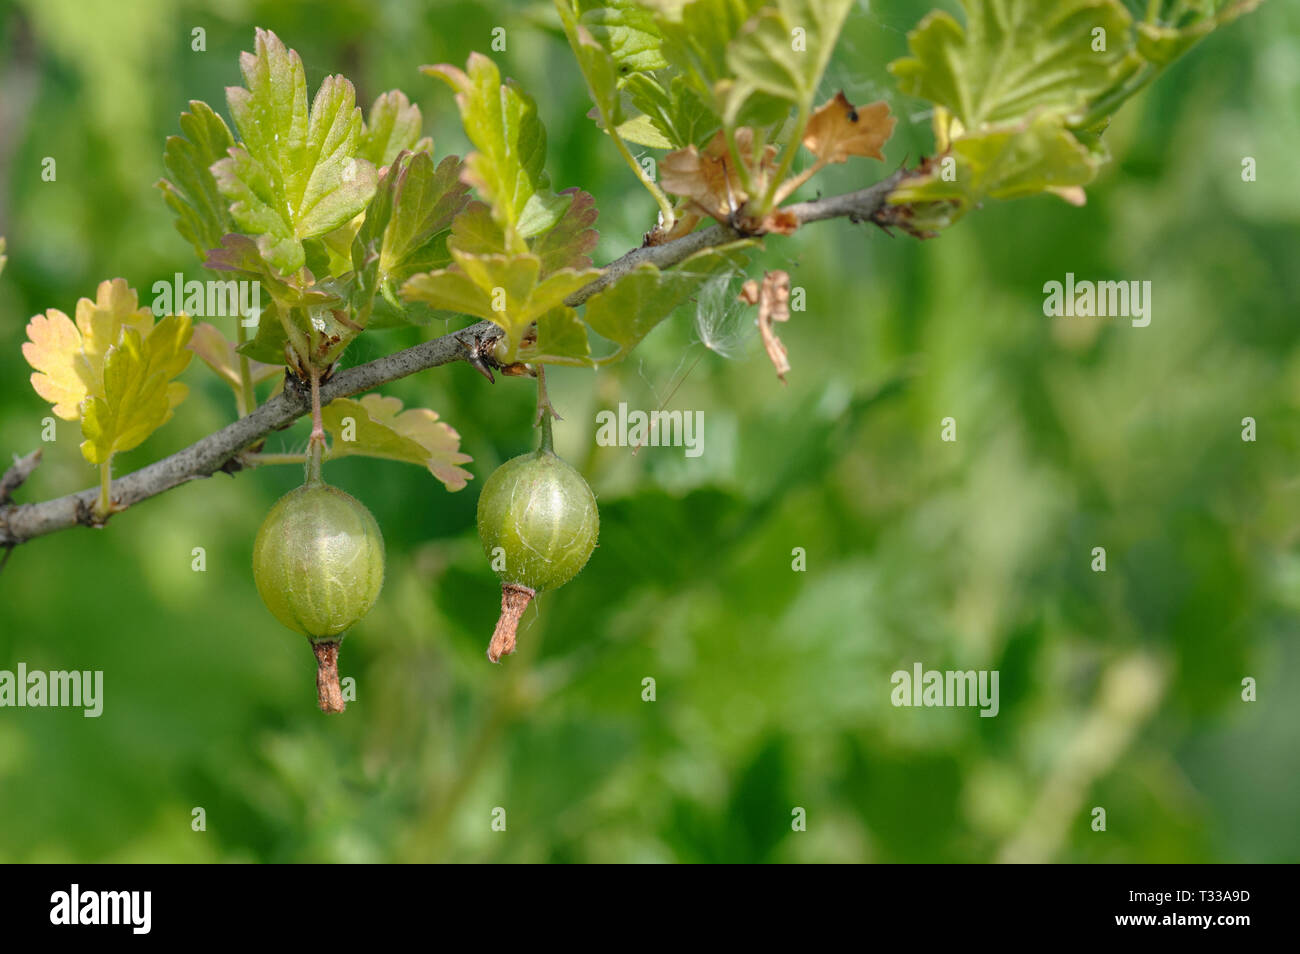 Blick auf frische grüne Stachelbeeren auf einem Zweig von stachelbeeren Busch im Garten Stockfoto